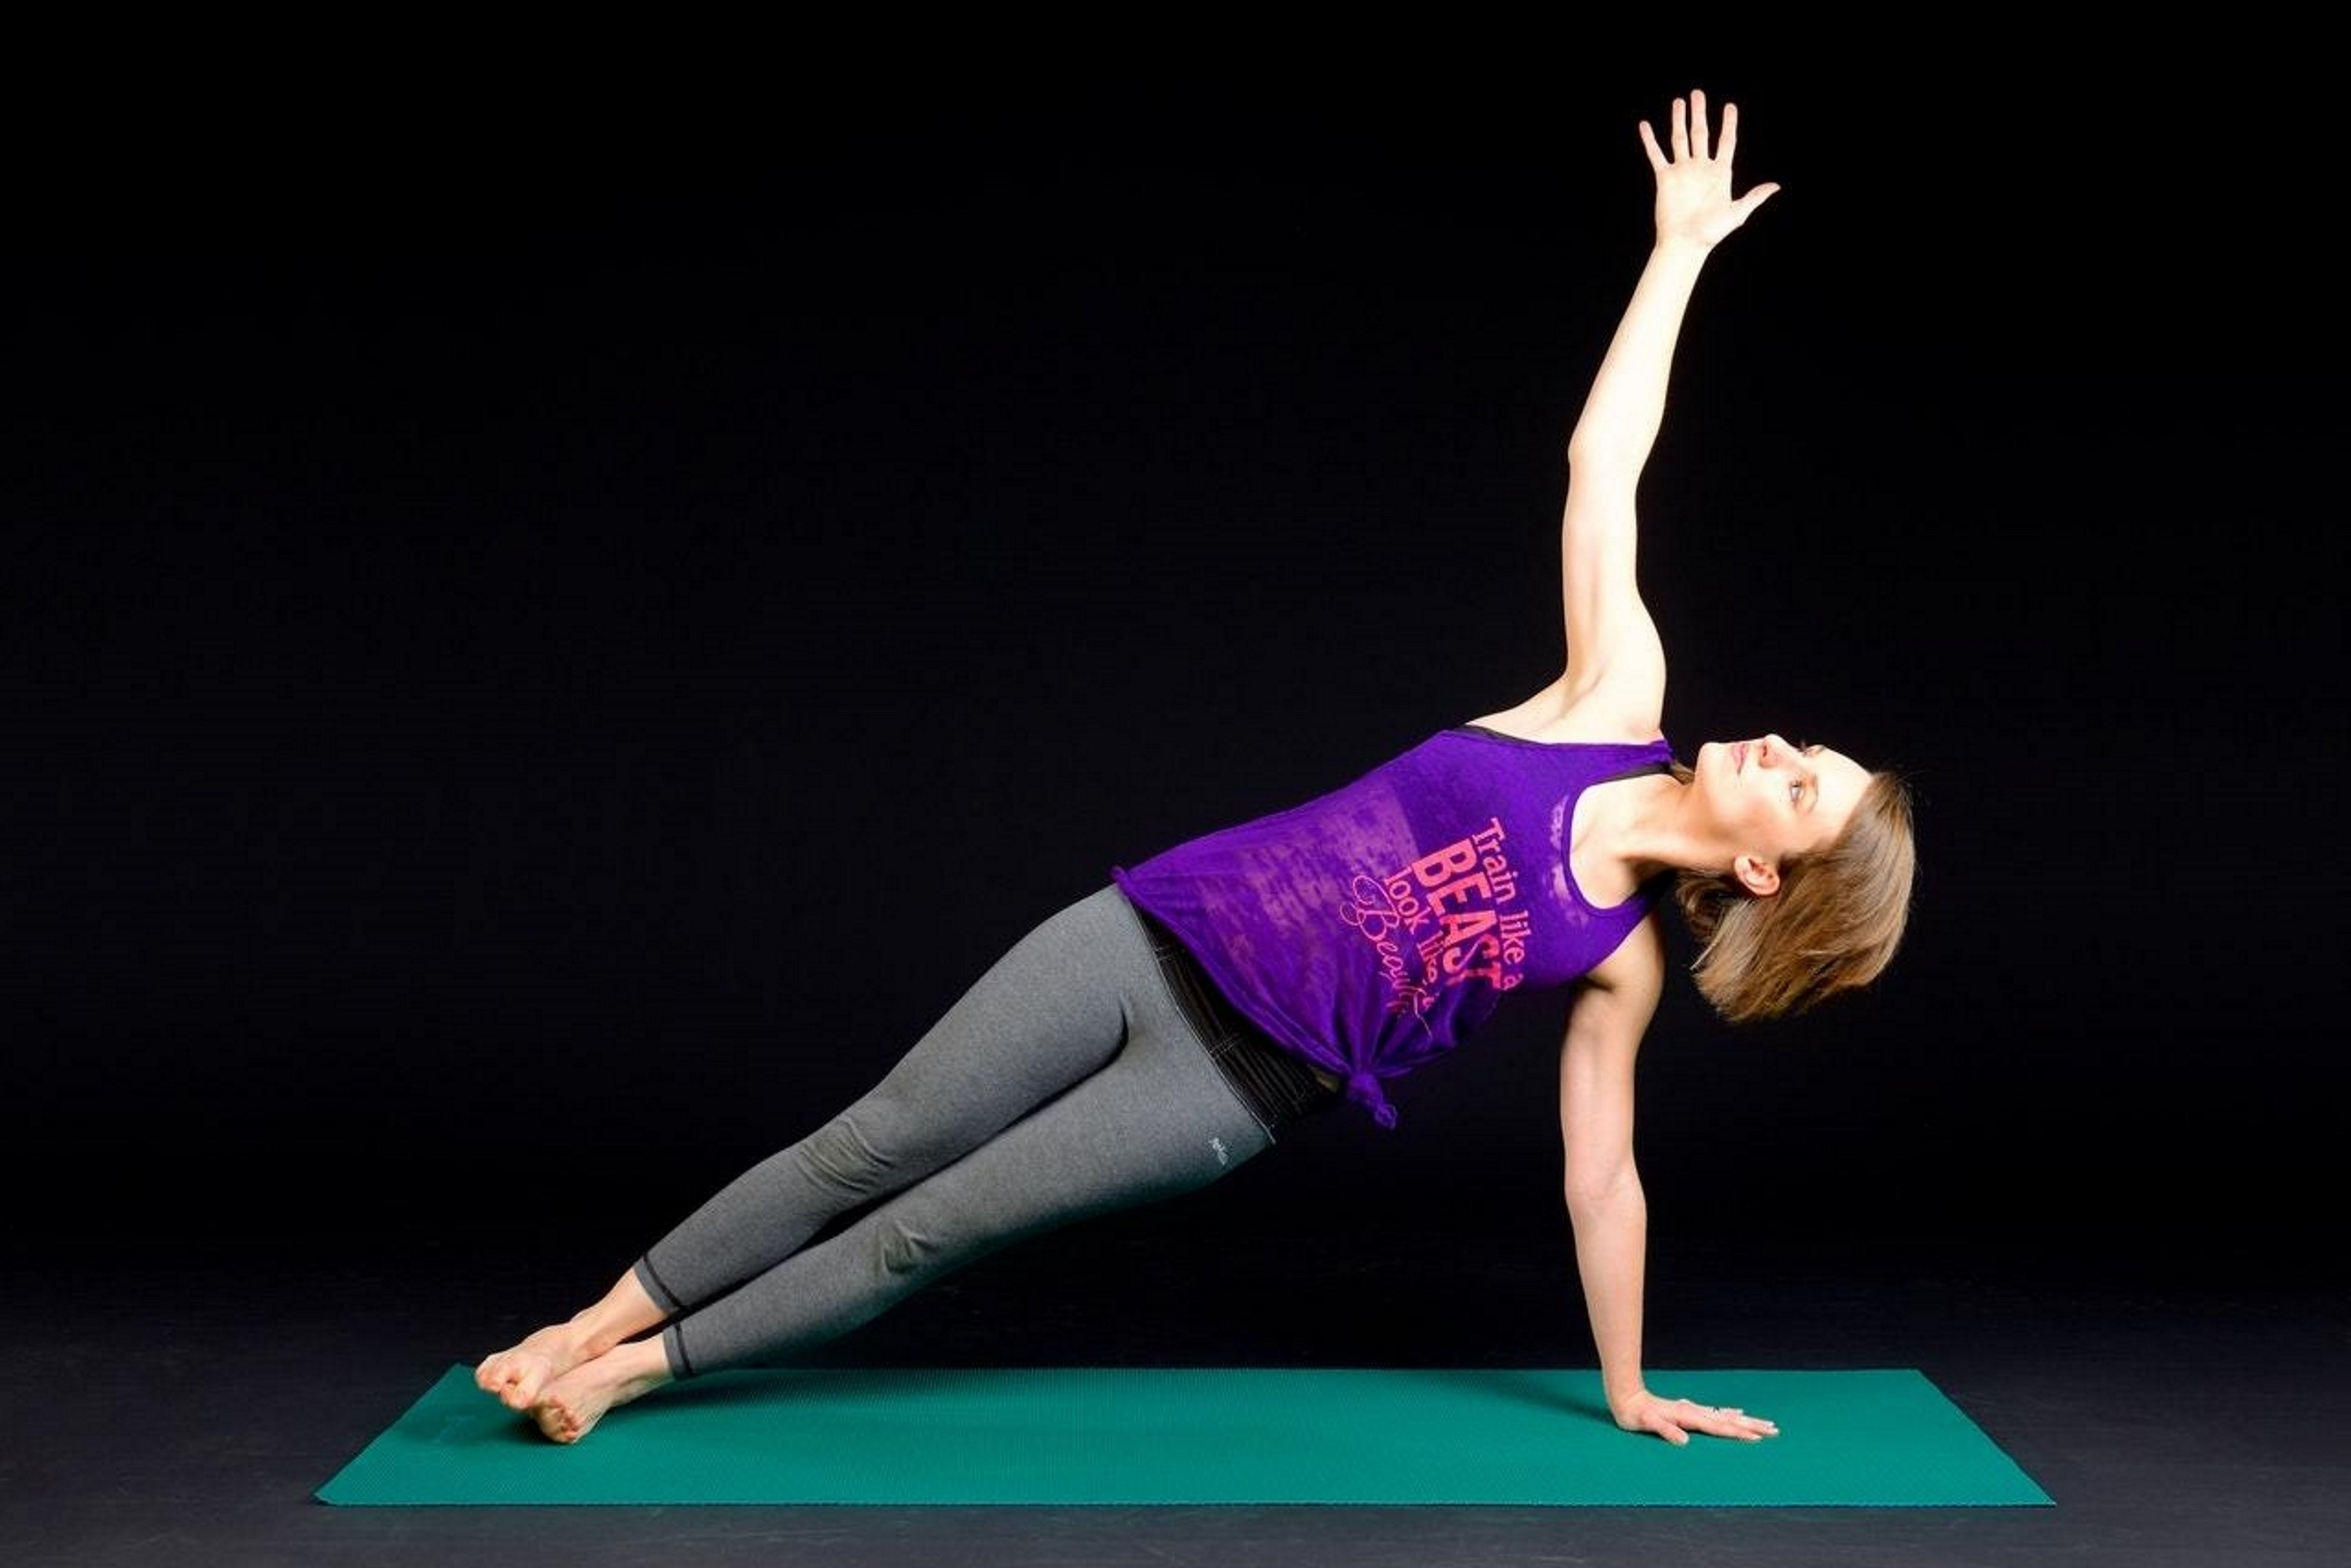 Top 5 Amazing Health Benefits Of Yoga